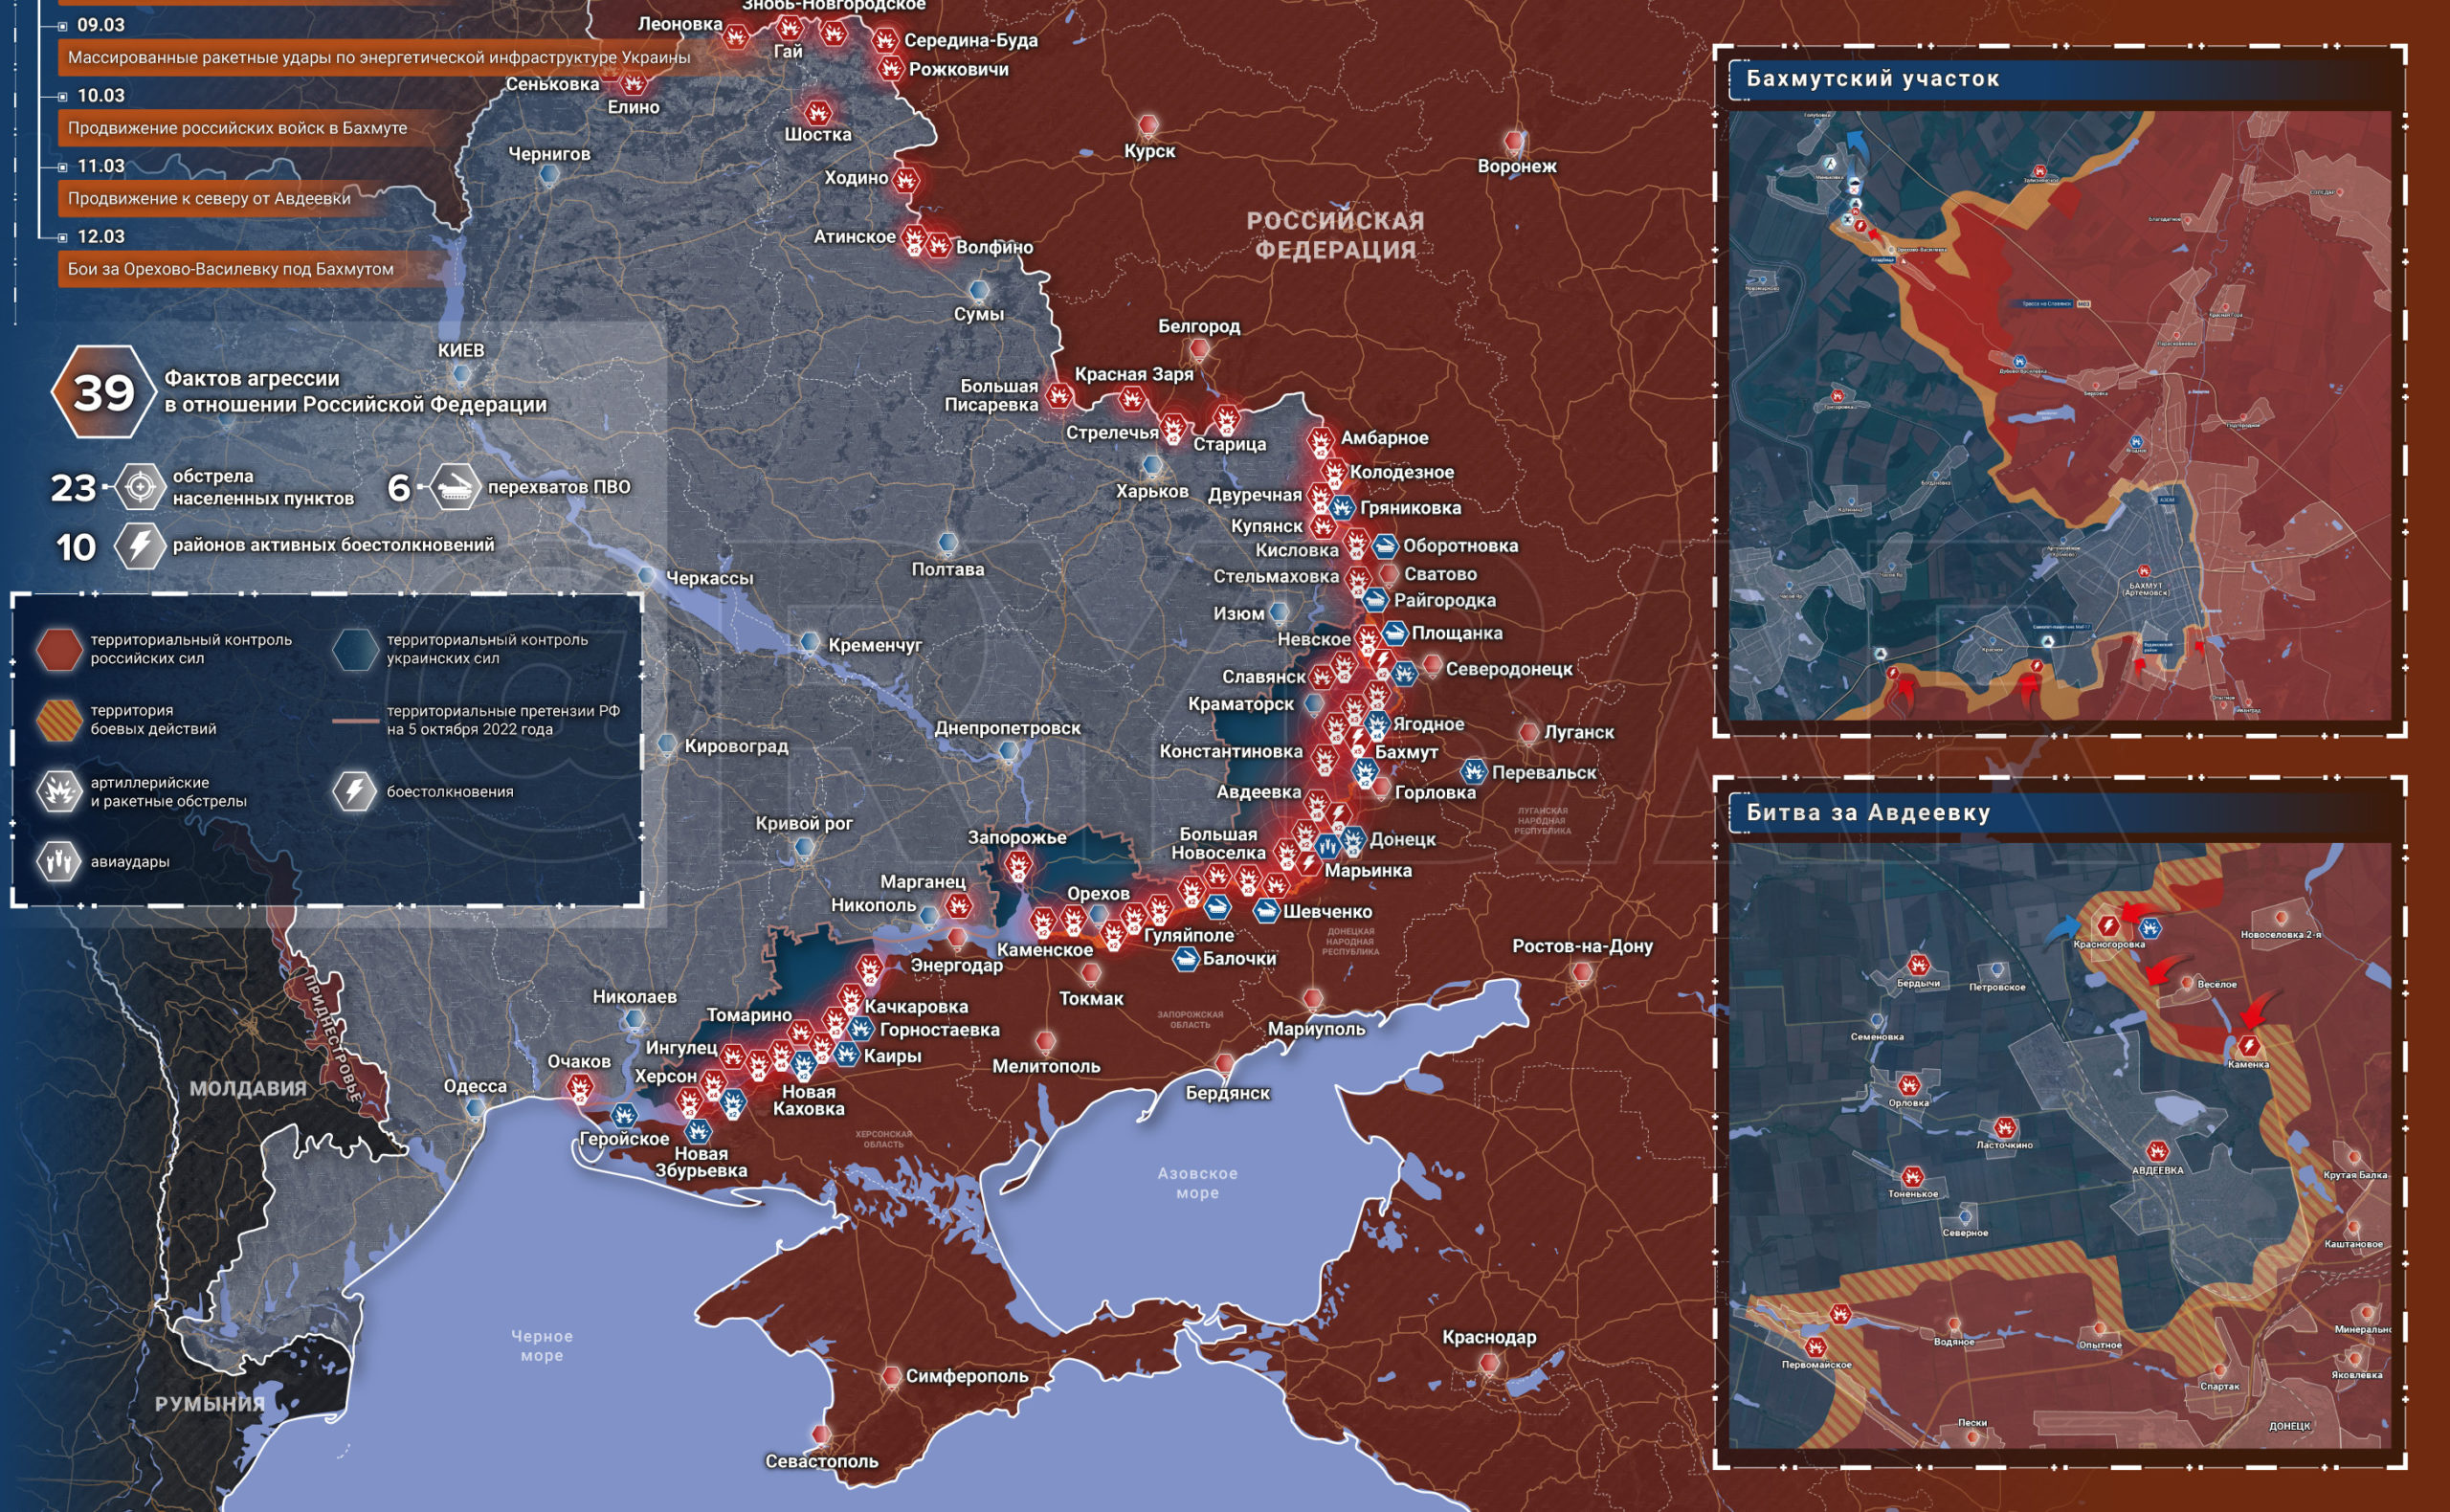 карта украины 2023 года фото